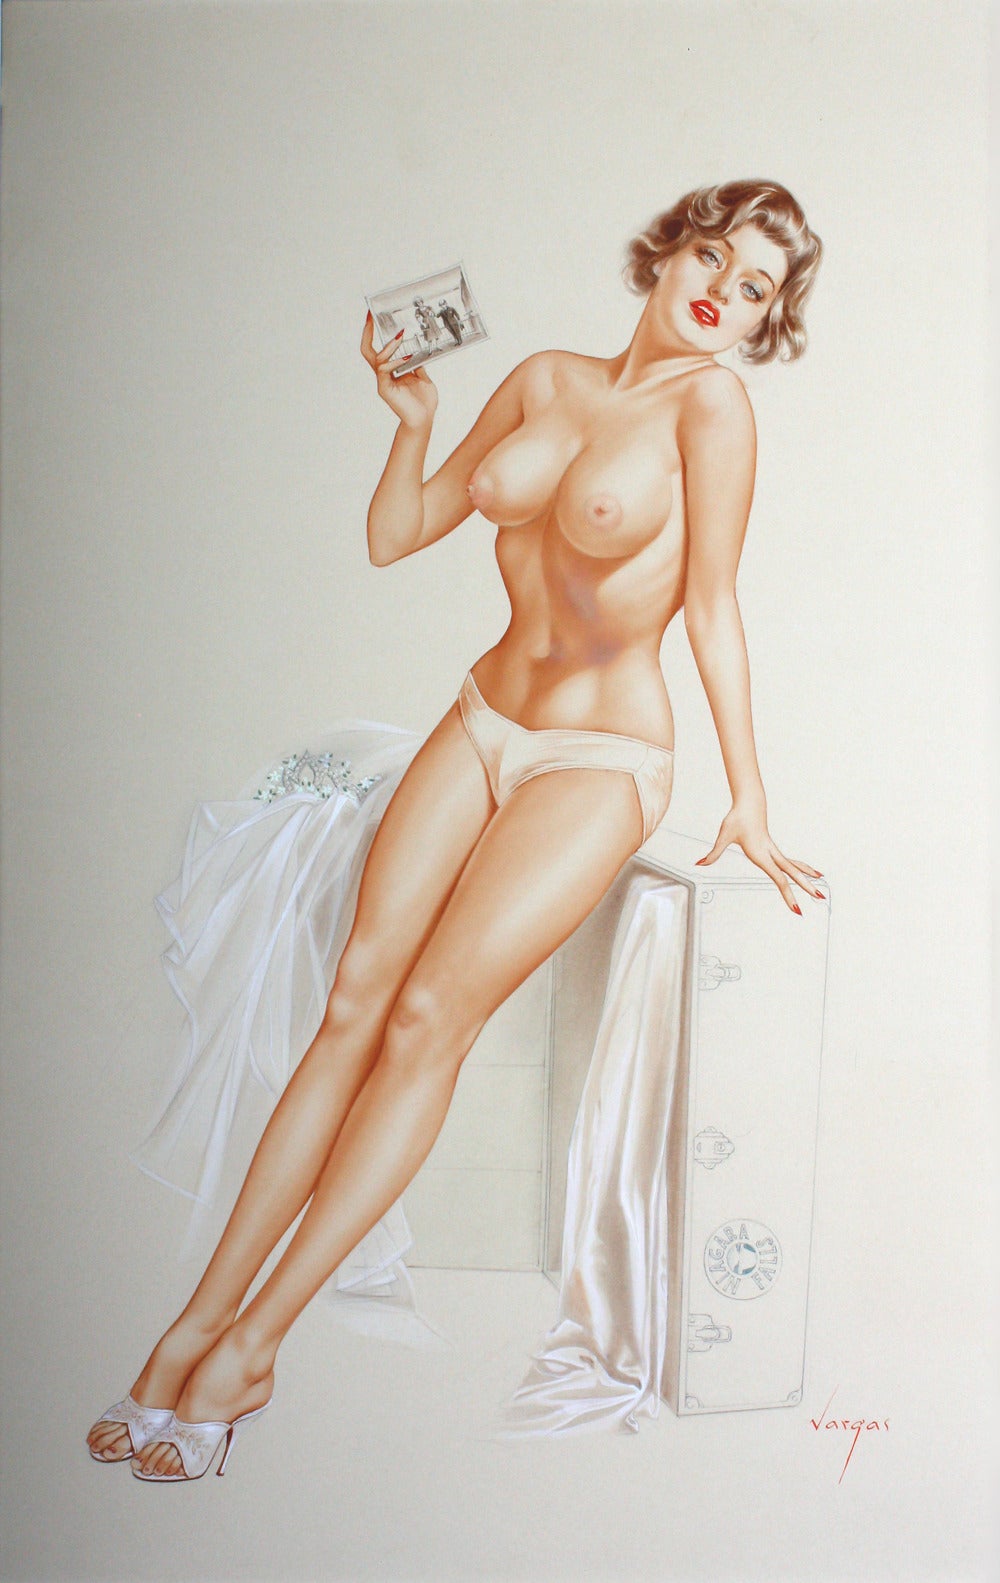 Alberto Vargas Nude Painting - Niagara Falls